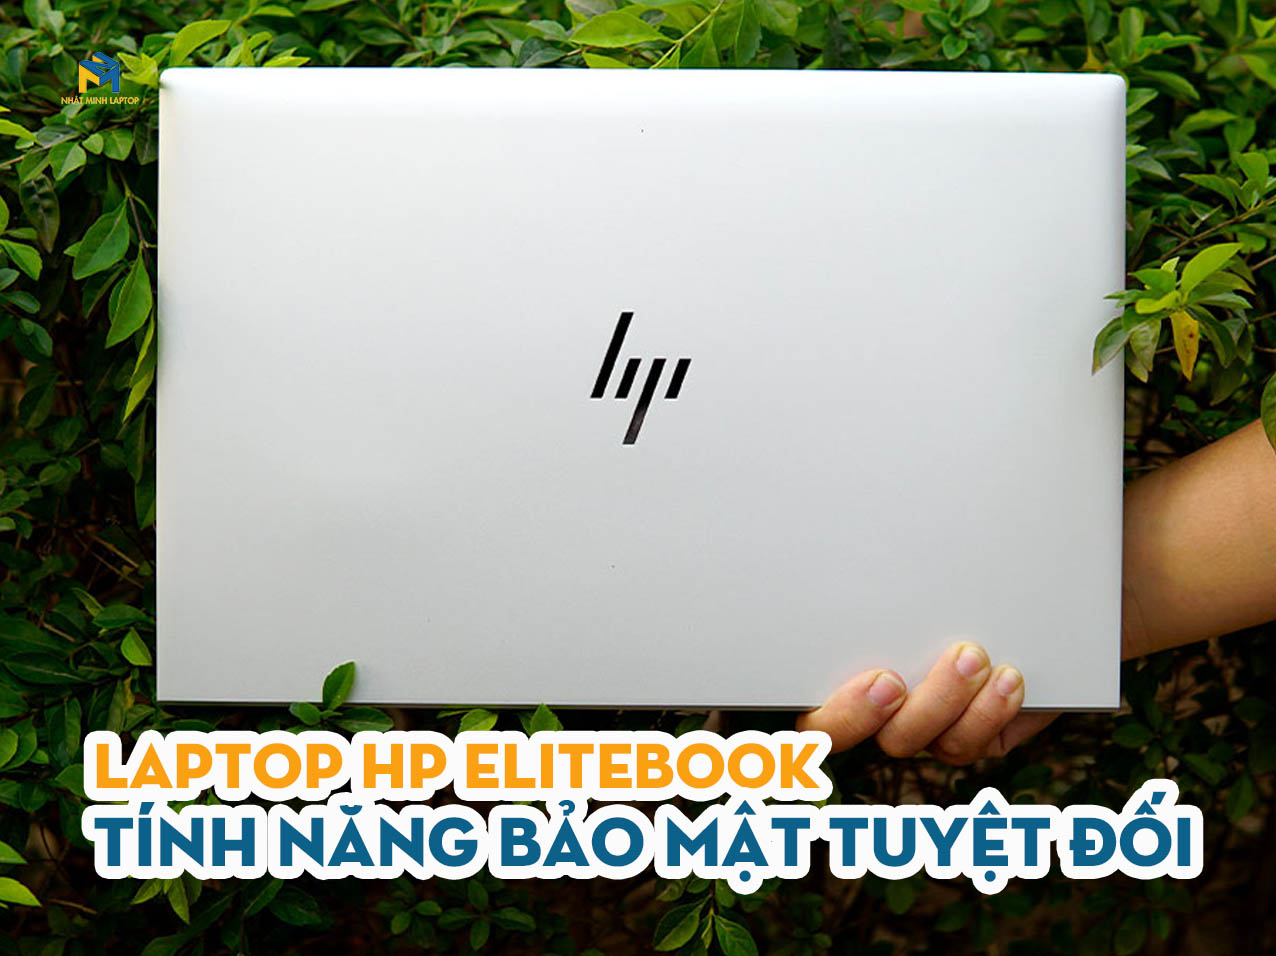 Laptop HP Elitebook i5 với tính năng bảo mật tuyệt đối